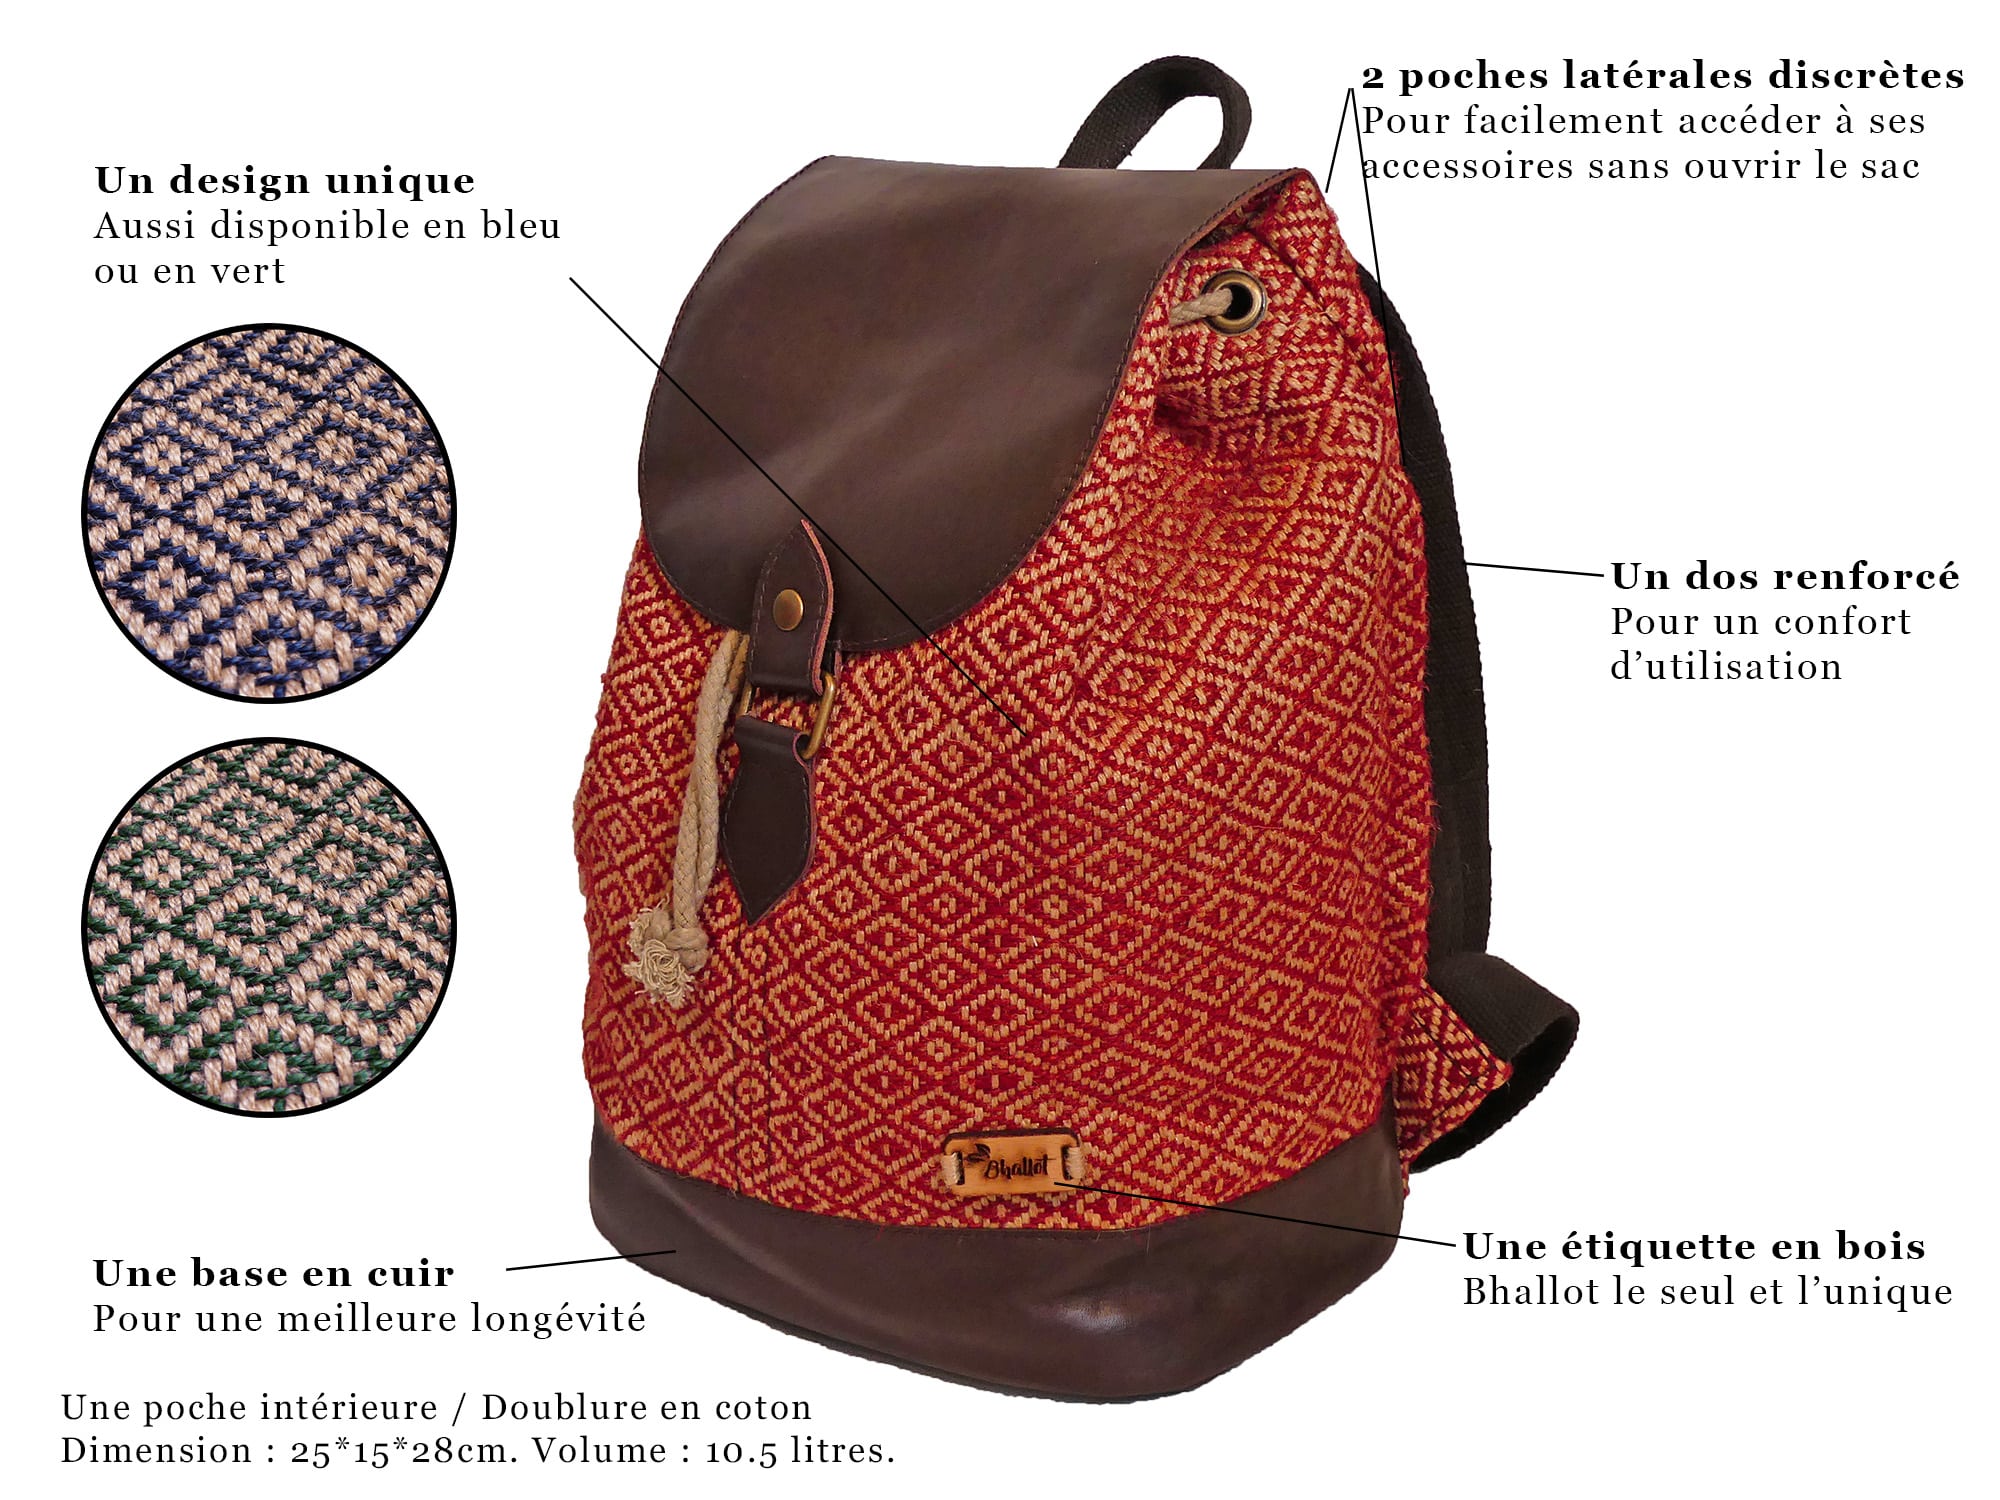 Quelle est la composition idéale pour votre sac à dos ?